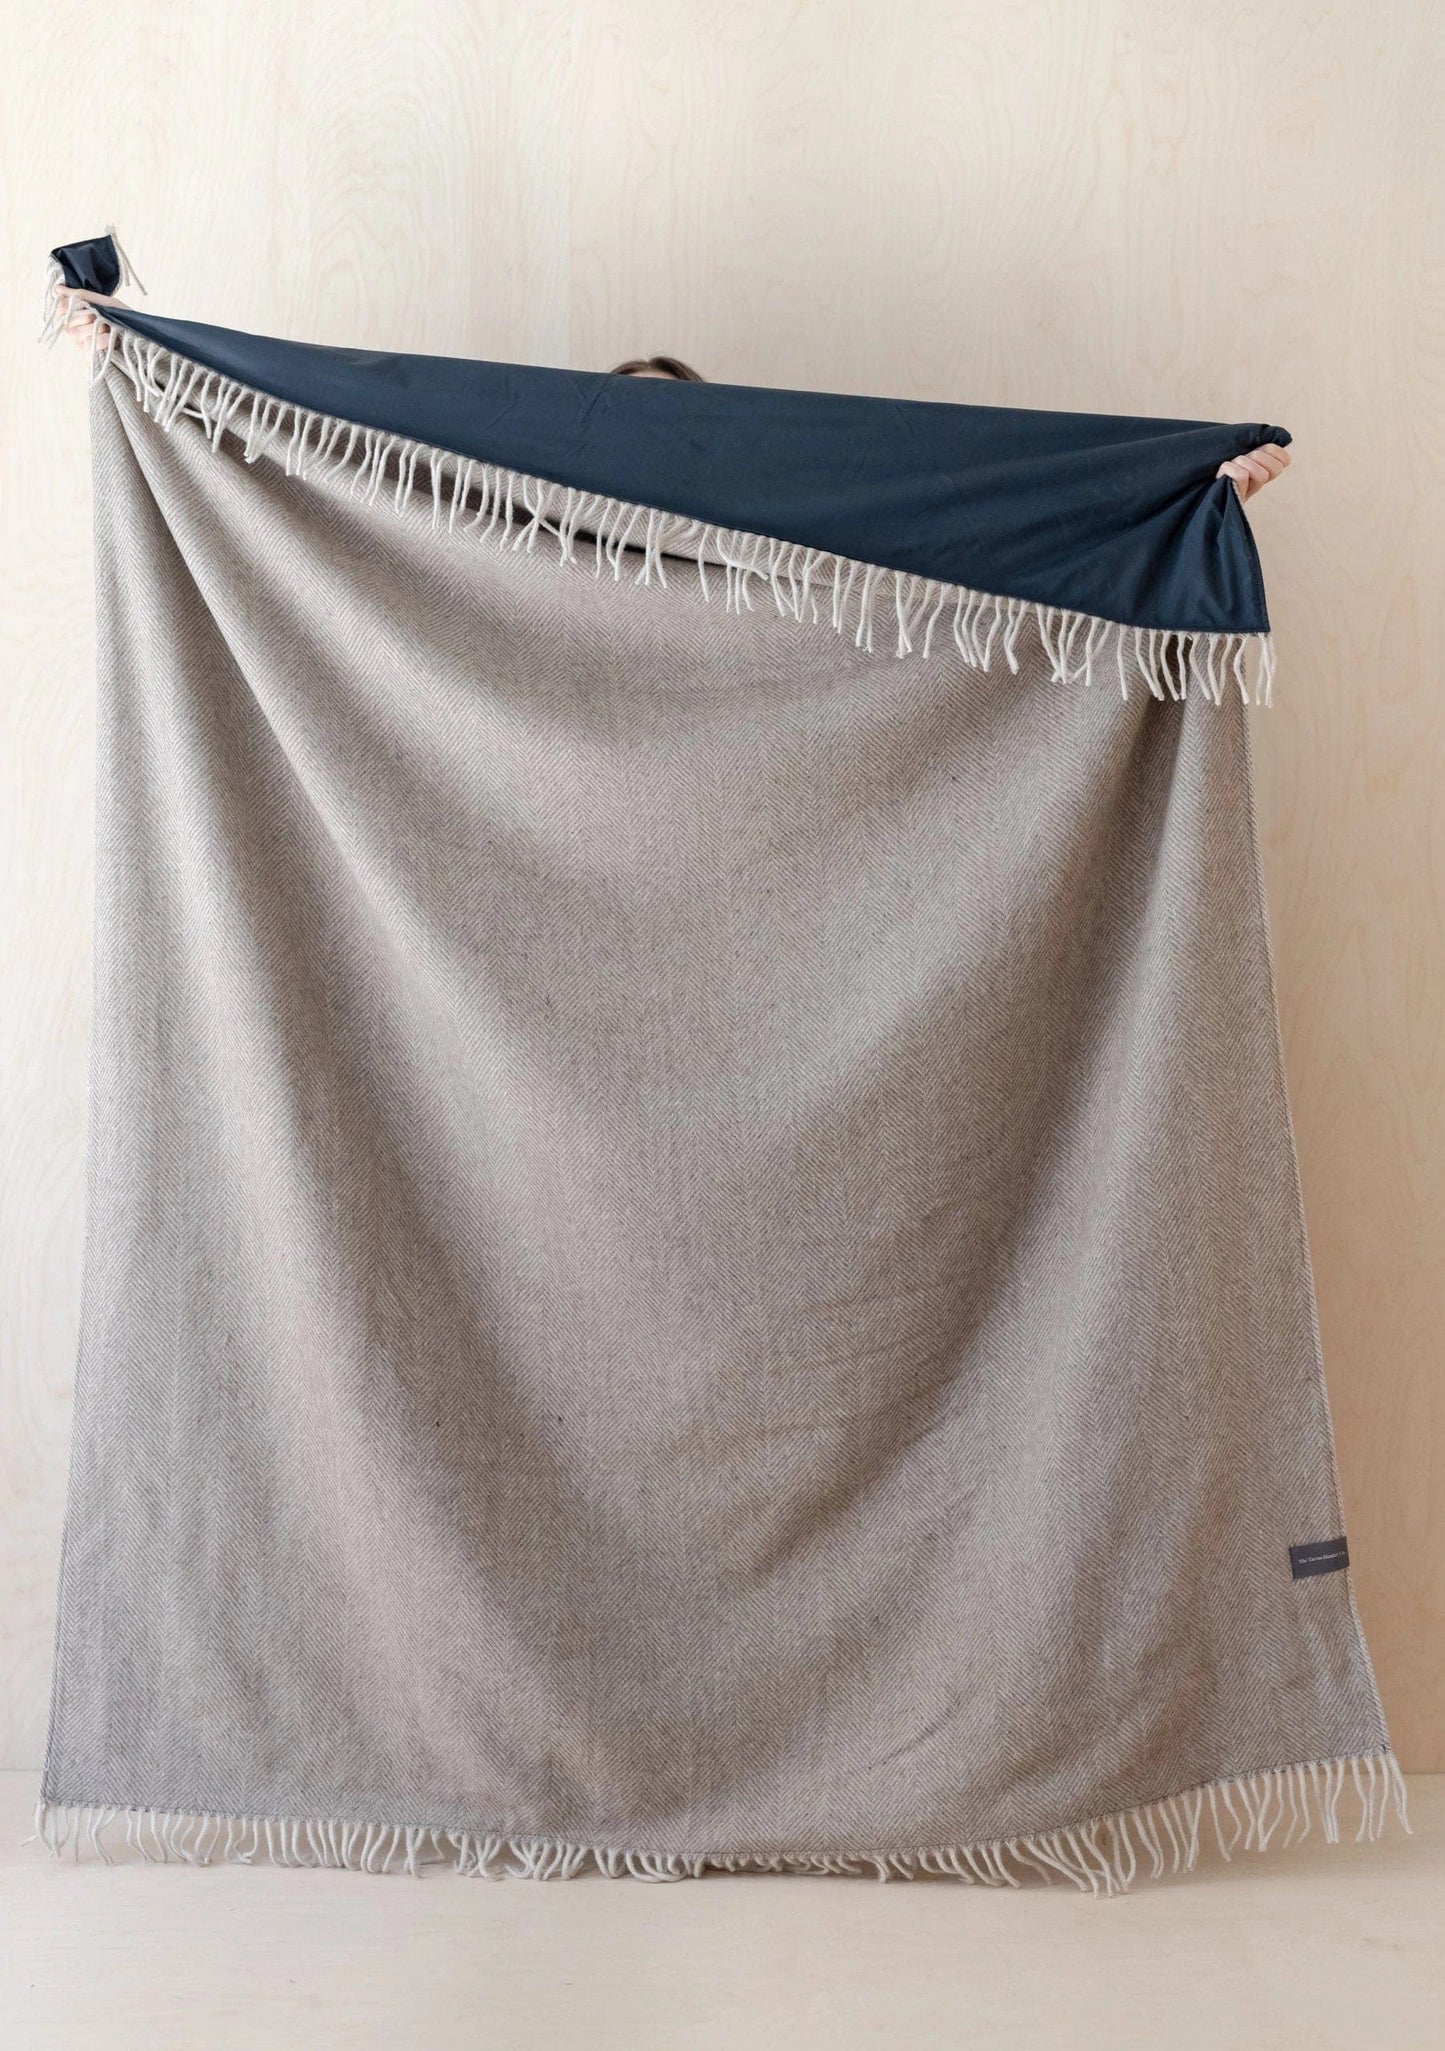 PRIOR SHOP Blankets Charcoal Grey Herringbone Recycled Wool Waterproof Picnic Blanket (various colours)